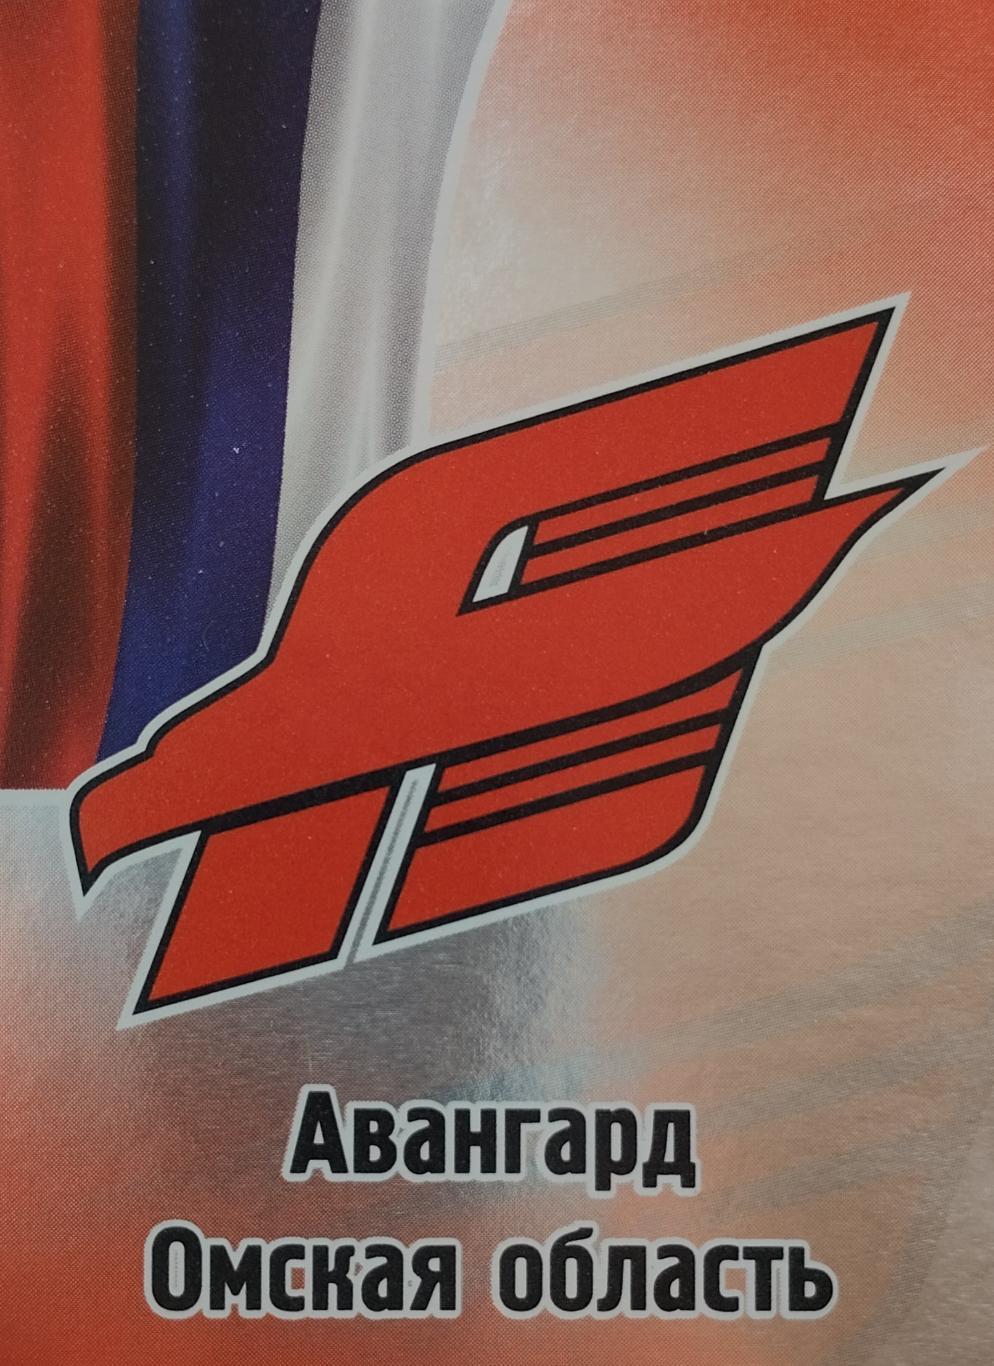 Наклейка. SeReal КХЛ 2012/2013. №463. Логотип. Авангард Омск.